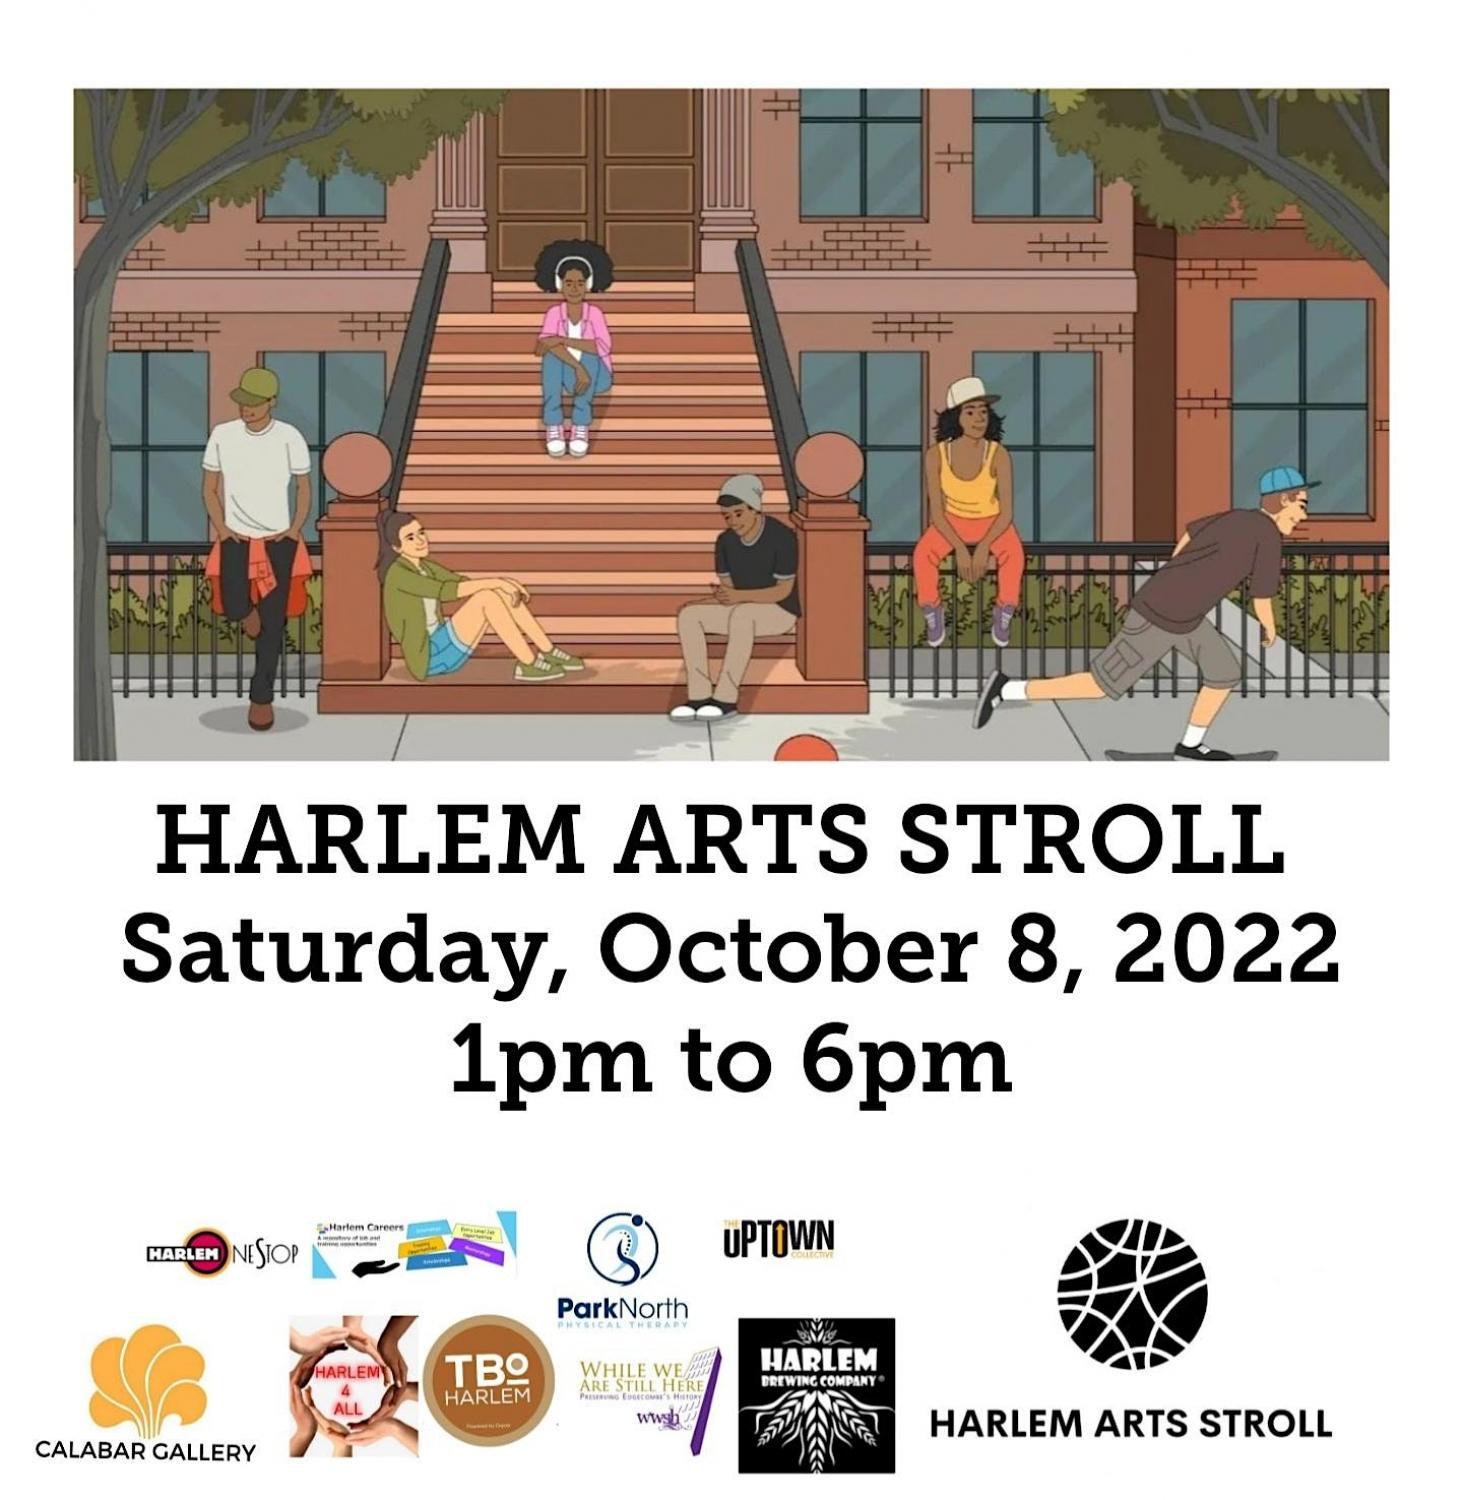 HARLEM ARTS STROLL : OCTOBER 8, 2022 EDITION
Sat Oct 8, 1:00 PM - Sat Oct 8, 6:00 PM